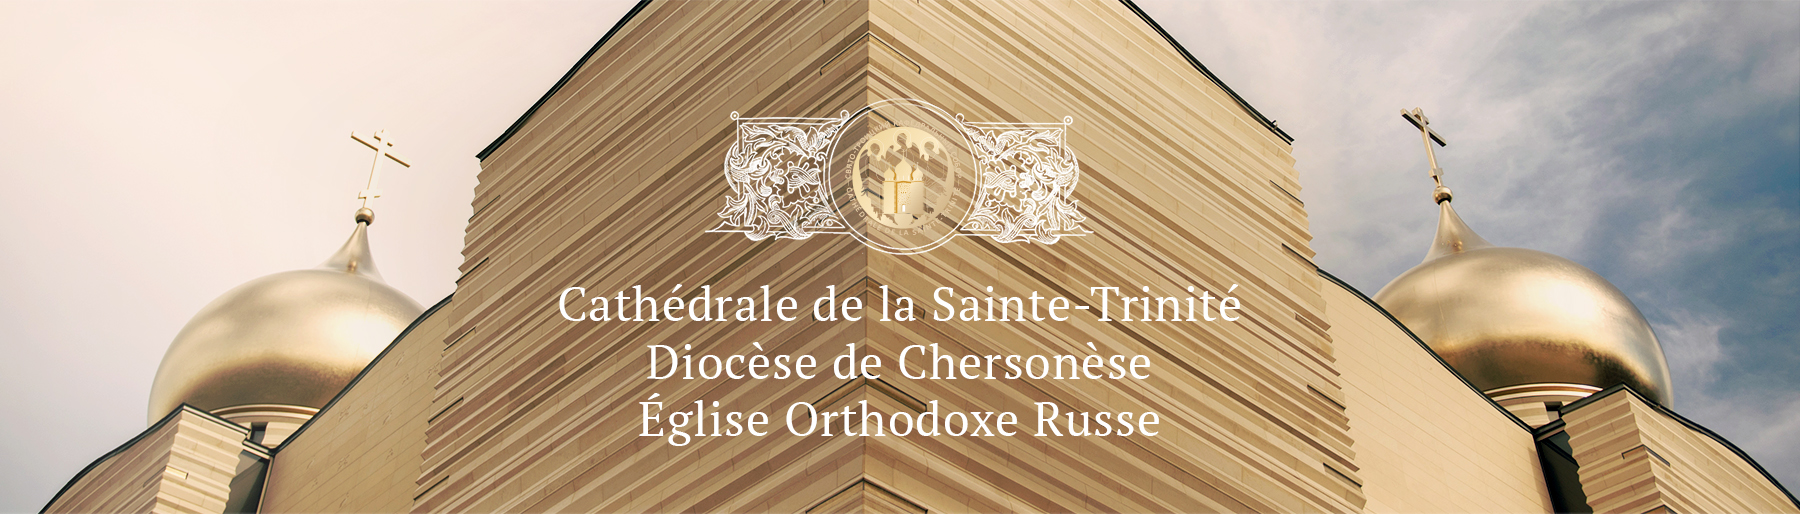 Le site Internet de la nouvelle cathédrale orthodoxe russe de la Sainte-Trinité à Paris